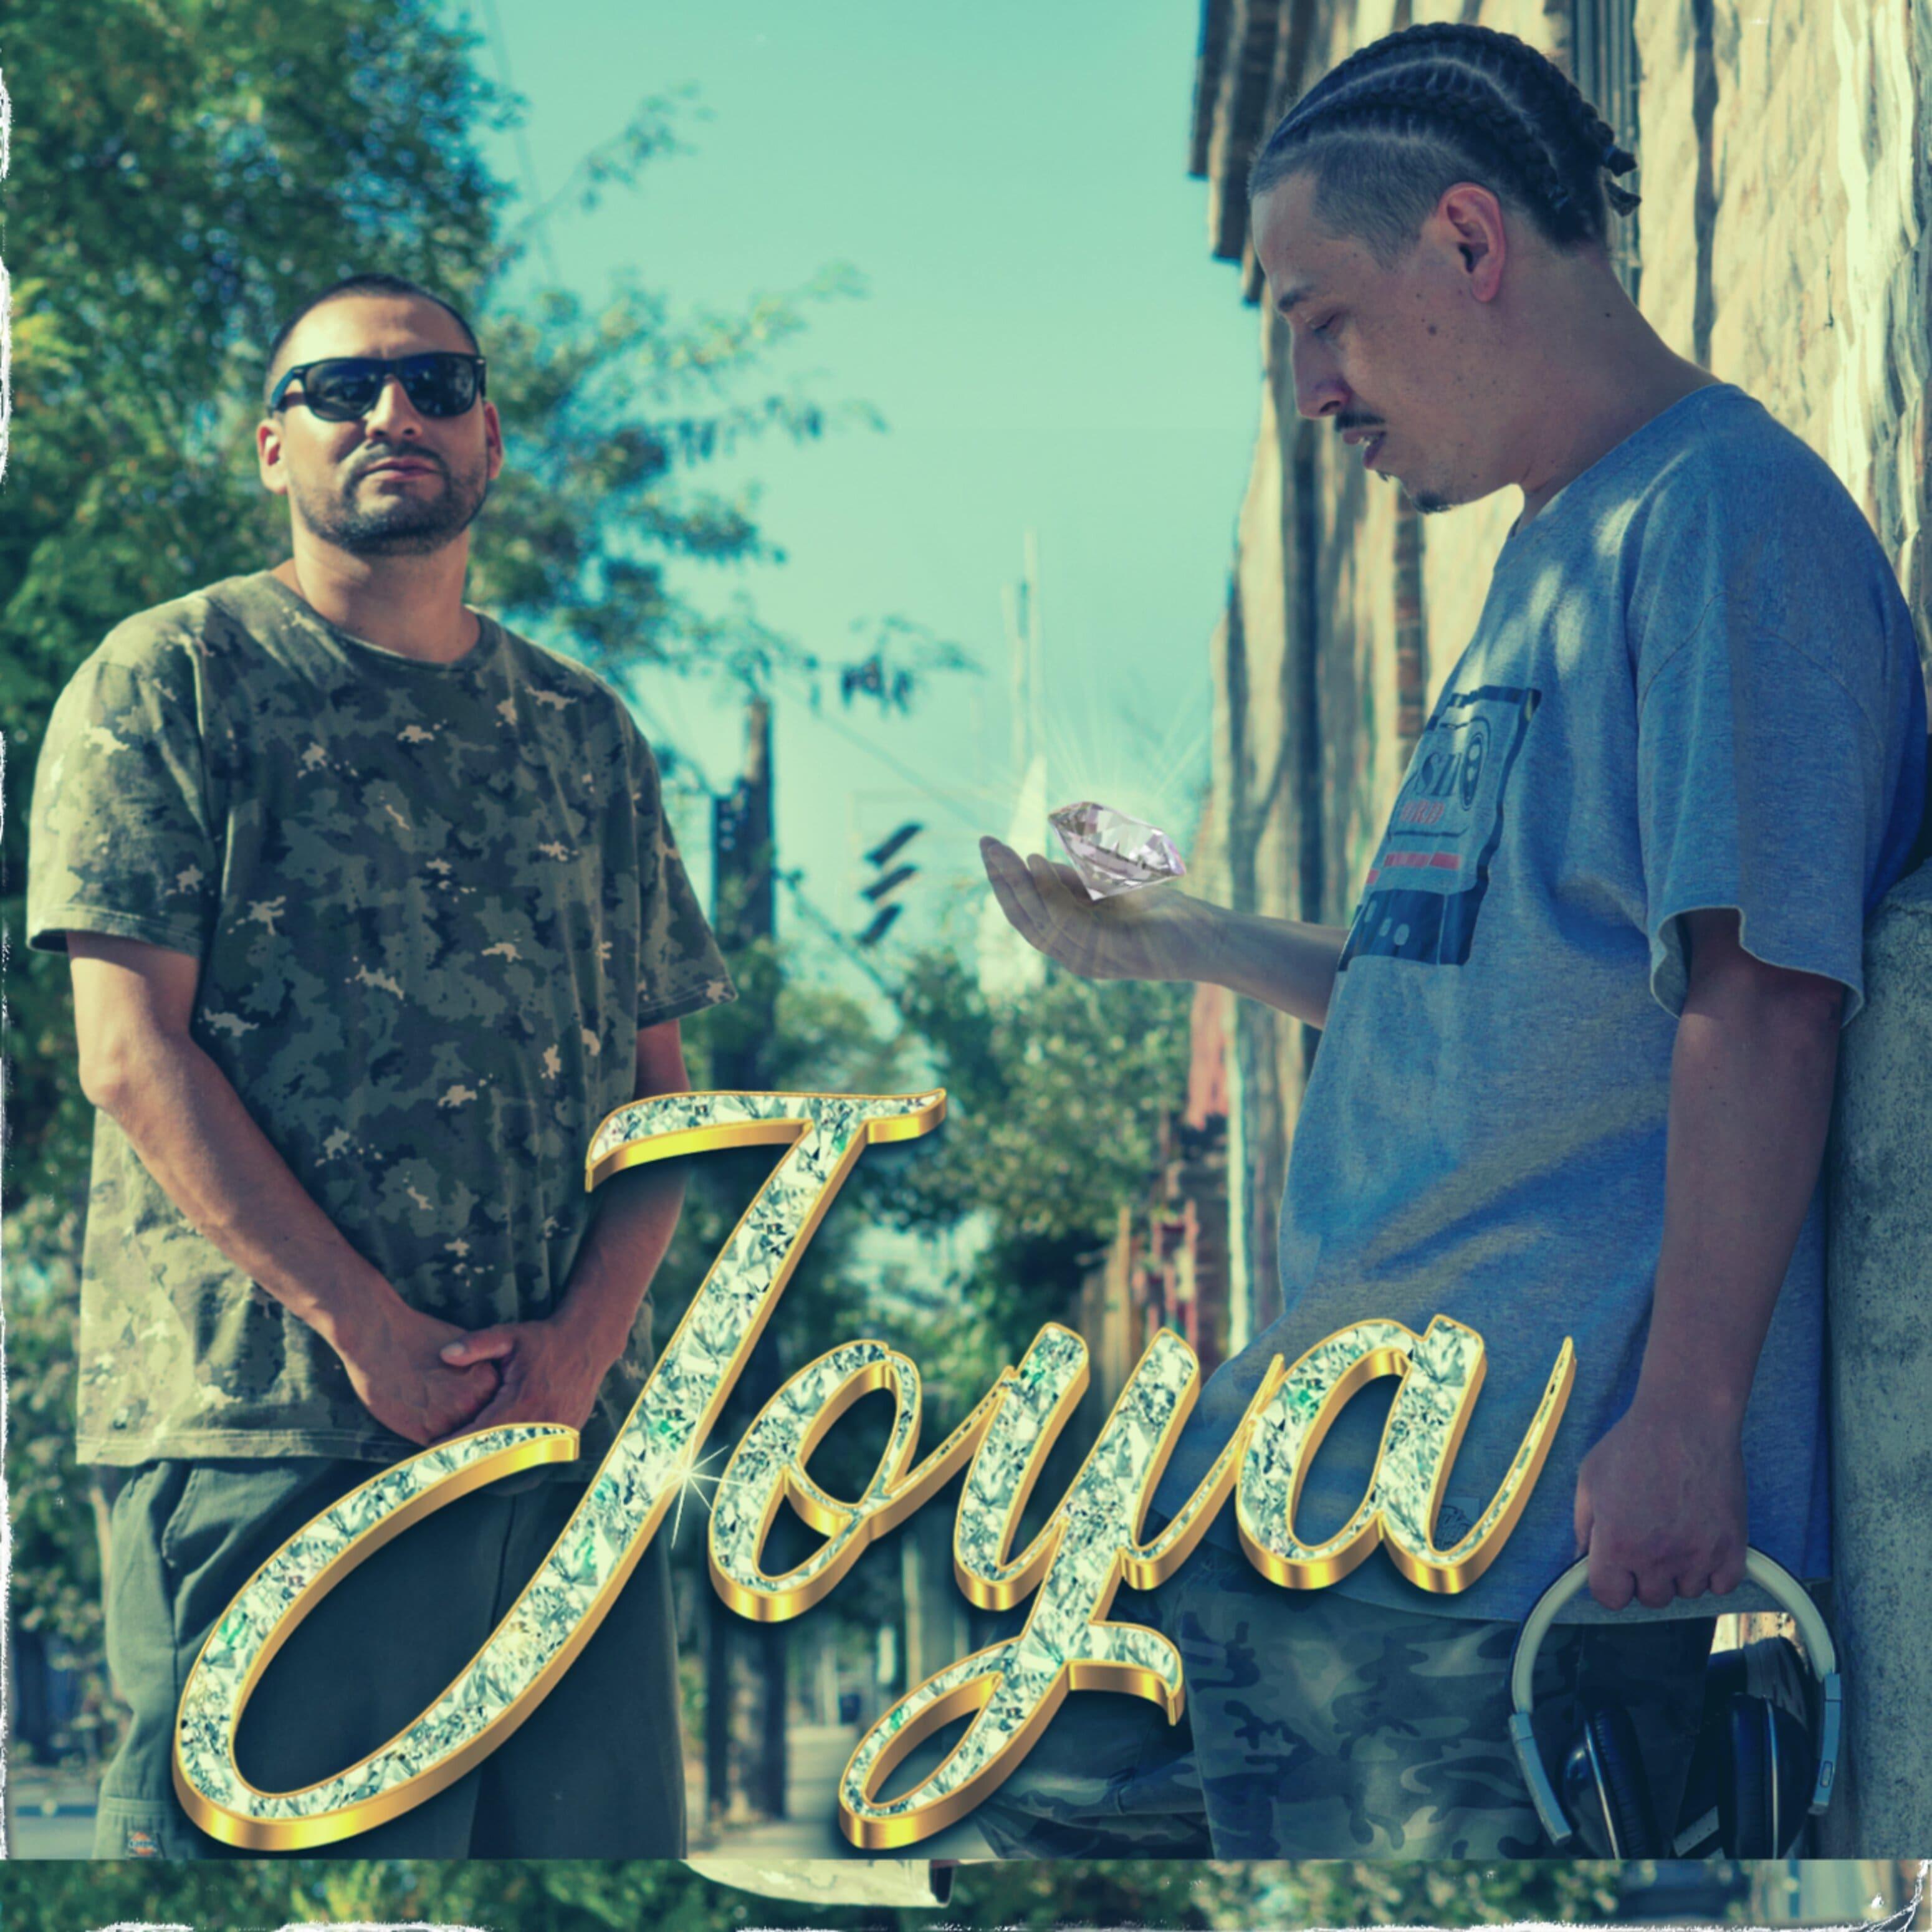 Постер альбома Joya